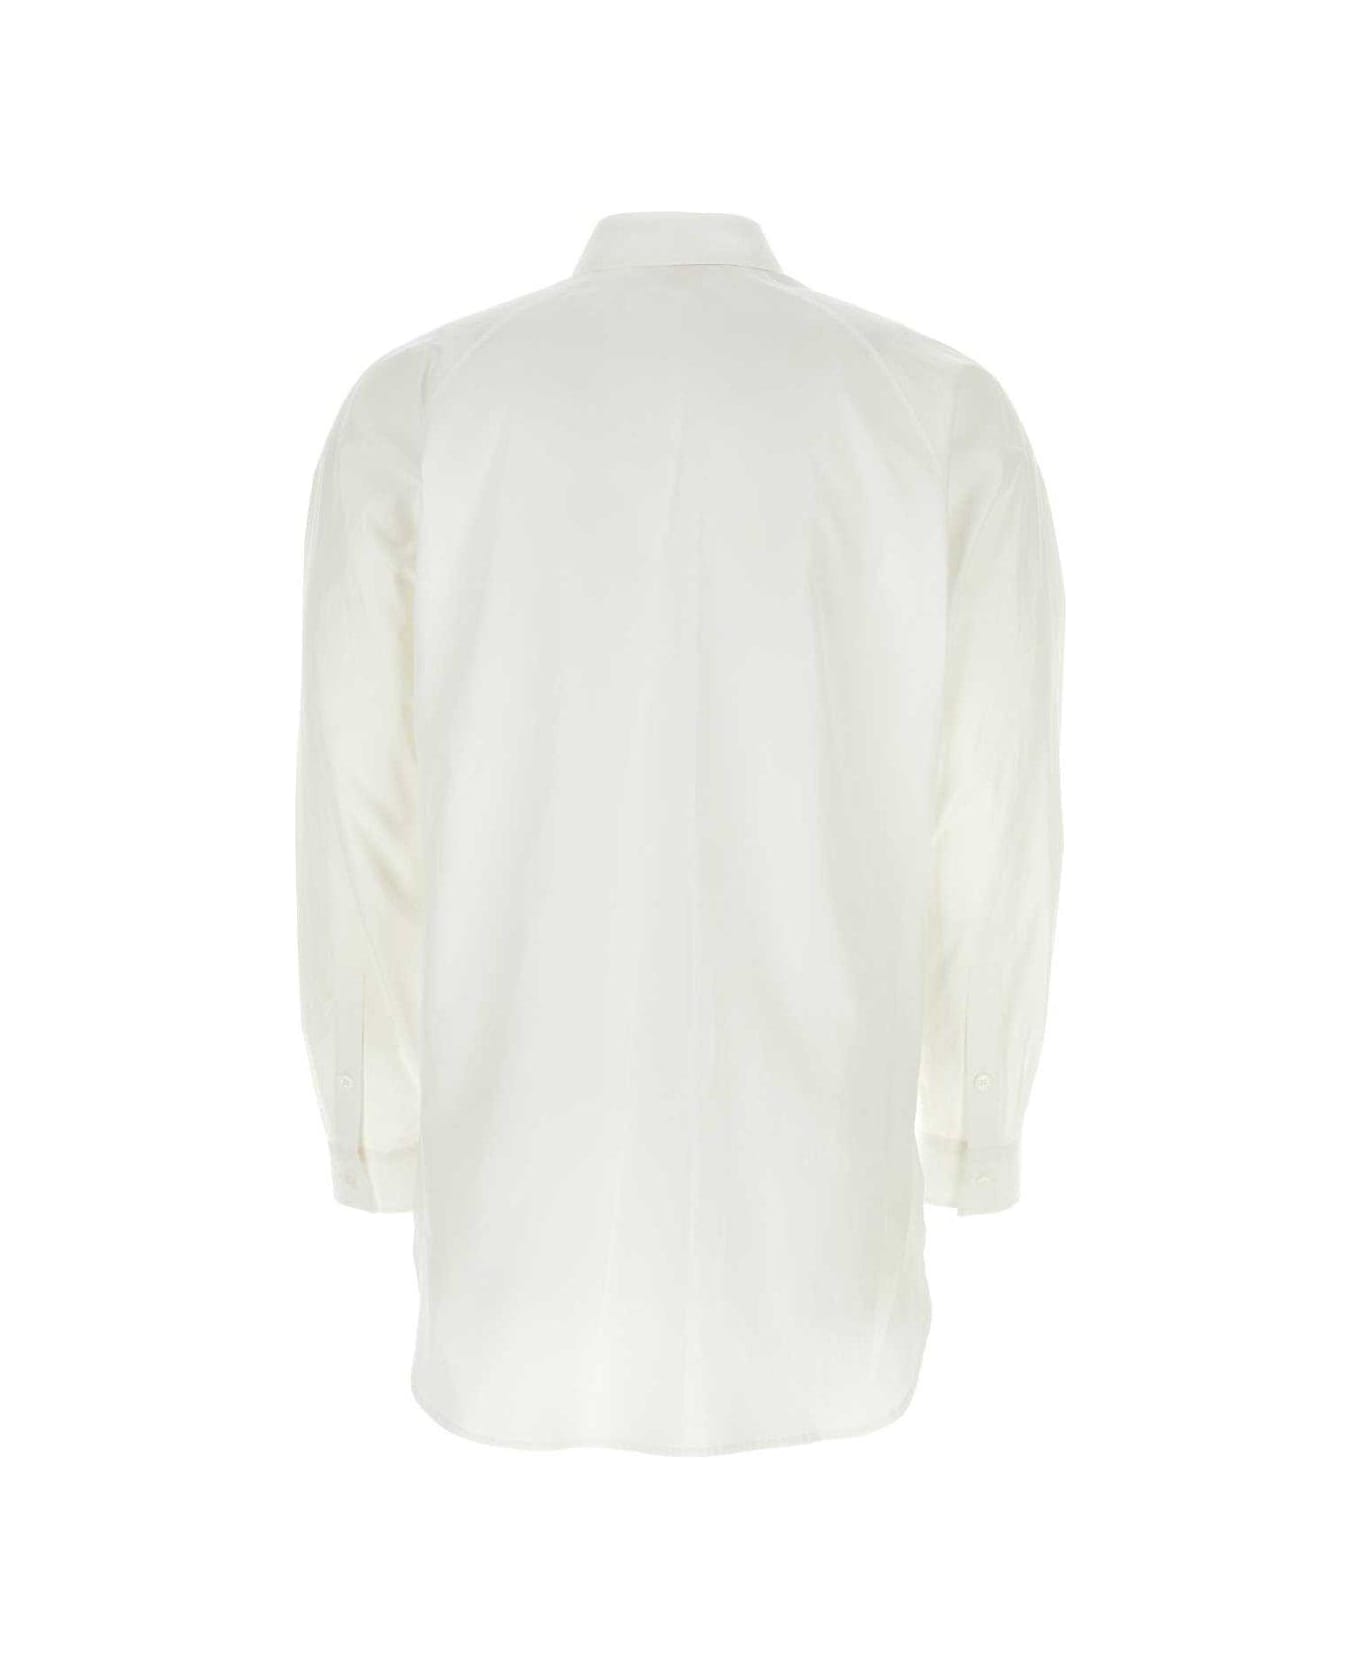 Yohji Yamamoto Broad A Ashymme Notched Shirt - White シャツ